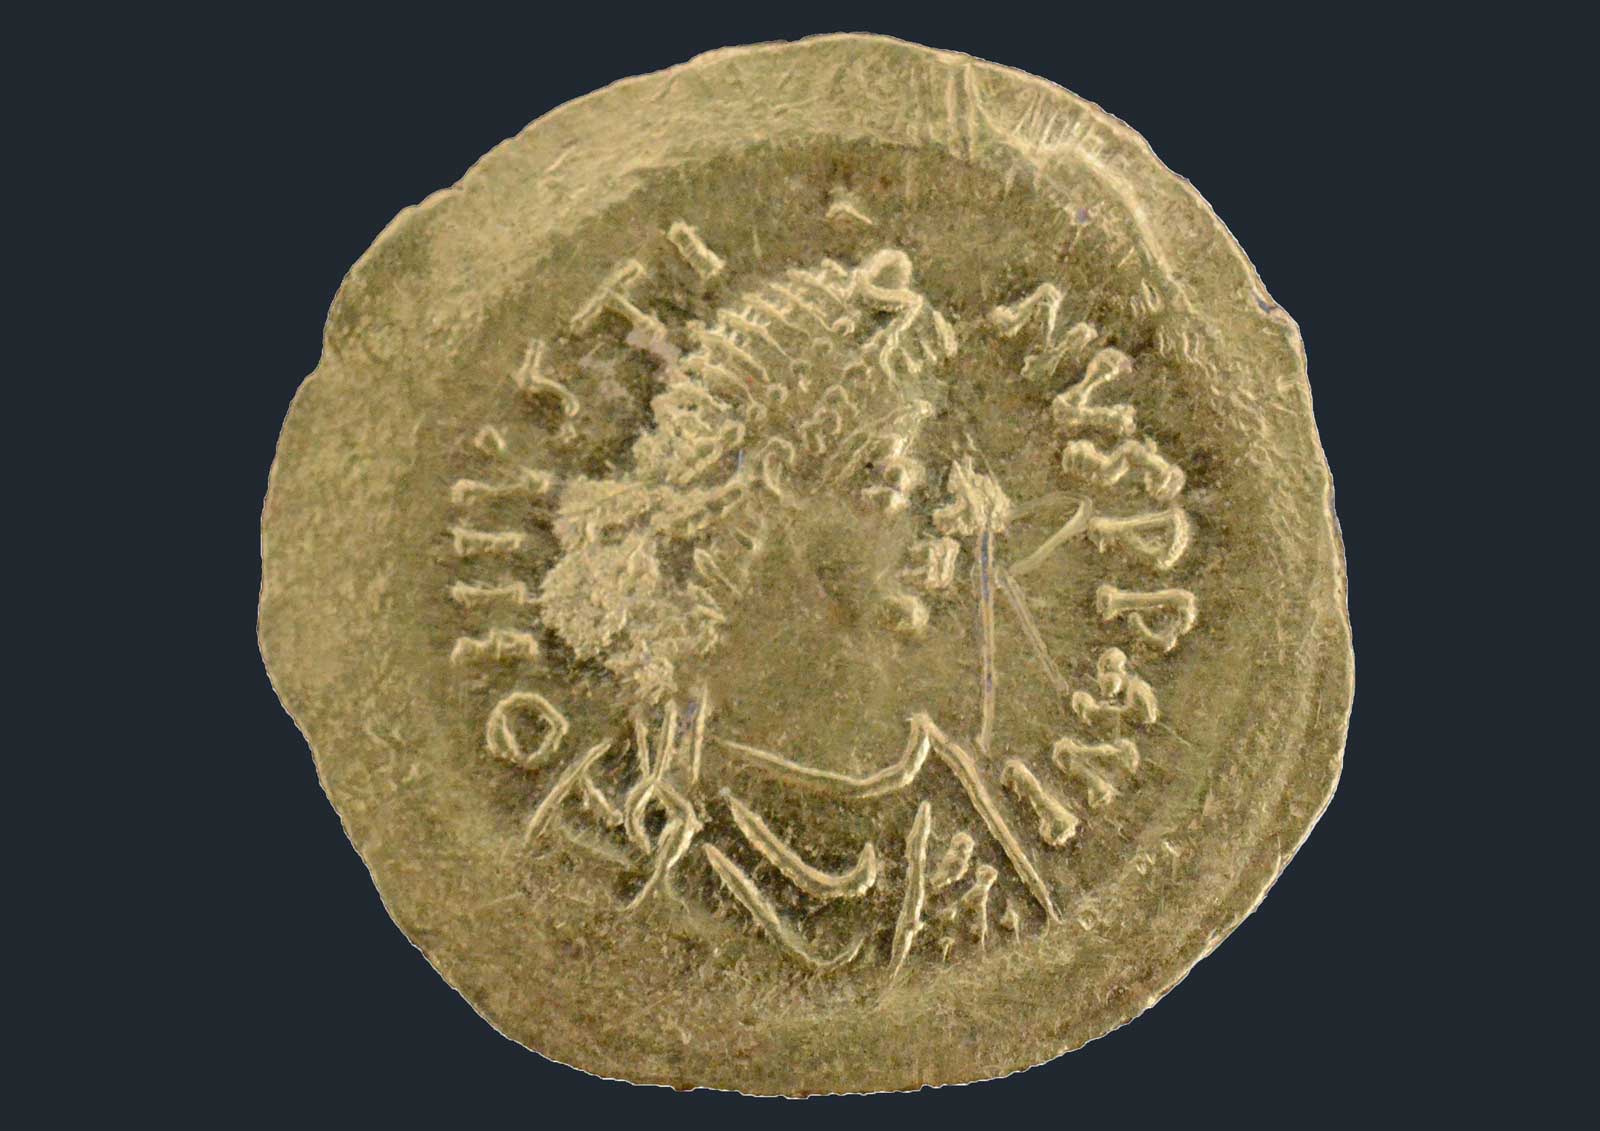 Златна монета на император Юстин І открита при разкопките в Ахтопол